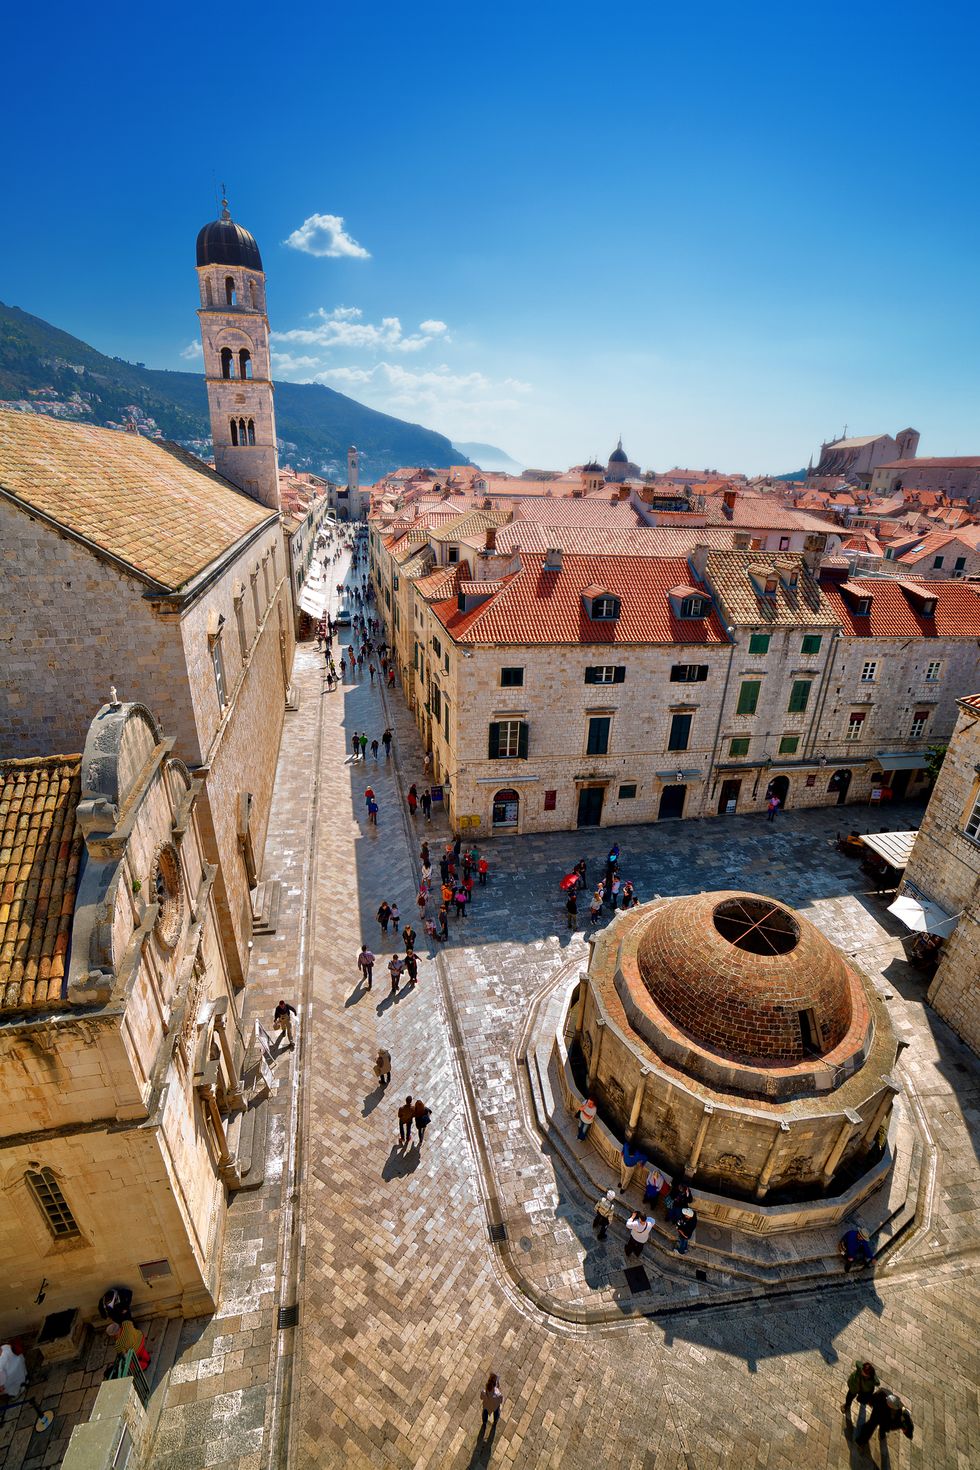 <p>De binnenstad zit tjokvol mooie plekken. De Onofrio fontein bijvoorbeeld, of de St. Blaise kerk. En vergeet ook niet Rector's Palace, of de oude stadsmuren. Niet zo gek dus, dat Dubrovnik het decor vormde voor sommige scènes uit <strong>Game of Thrones</strong>. </p>